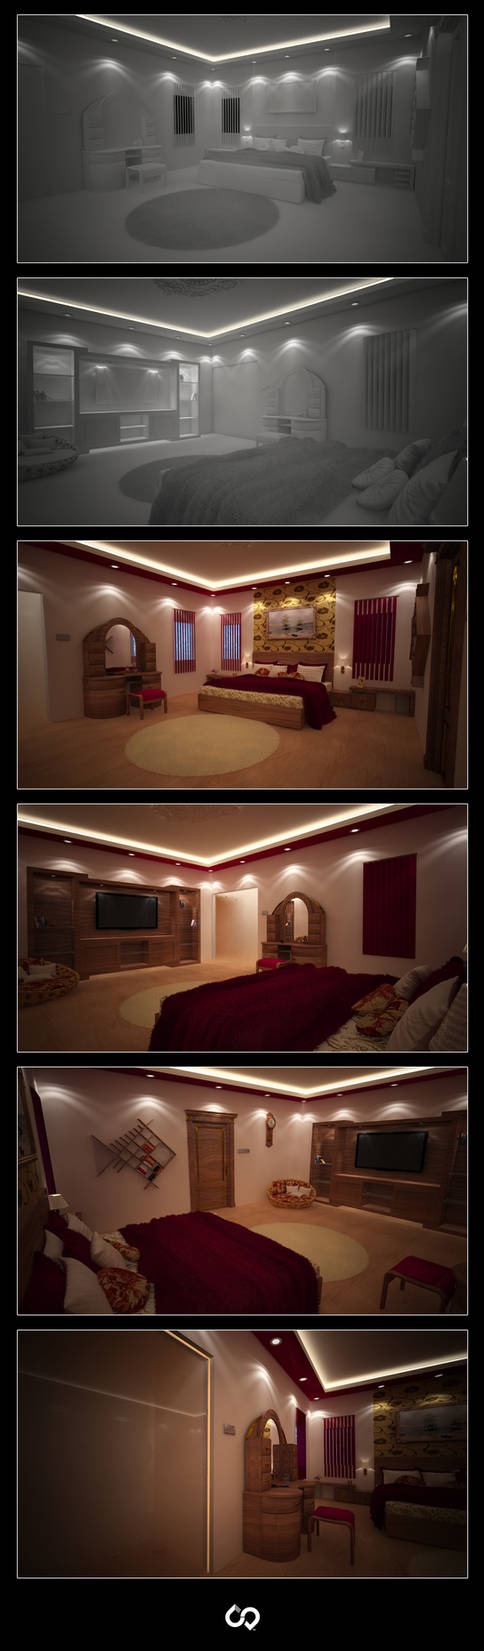 Bedroom Interior concept